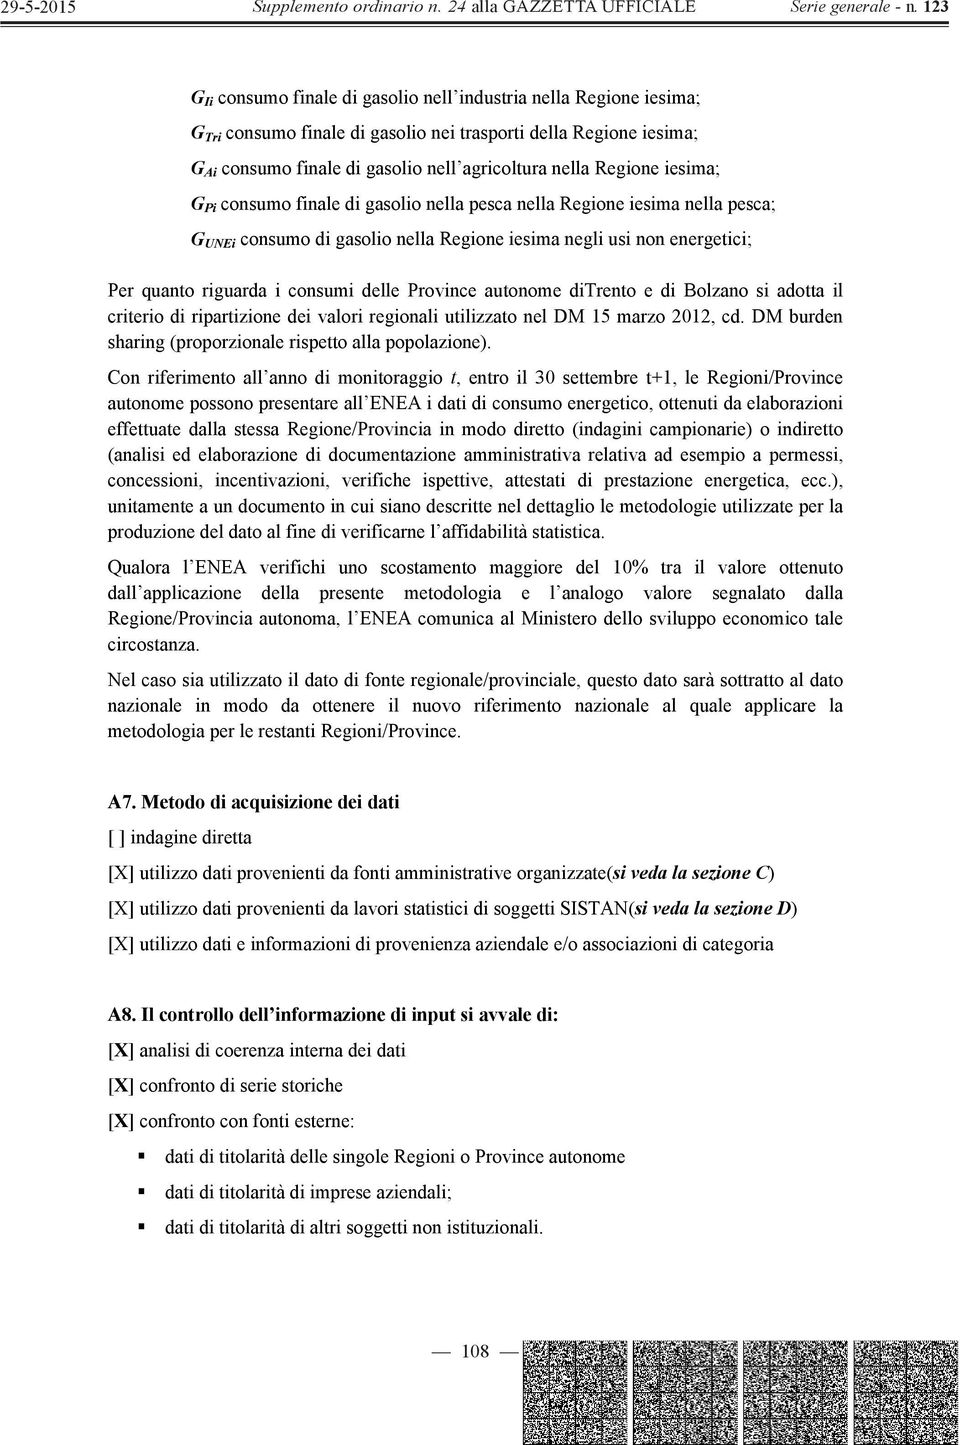 Province autonome ditrento e di Bolzano si adotta il criterio di ripartizione dei valori regionali utilizzato nel DM 15 marzo 2012, cd. DM burden sharing (proporzionale rispetto alla popolazione).